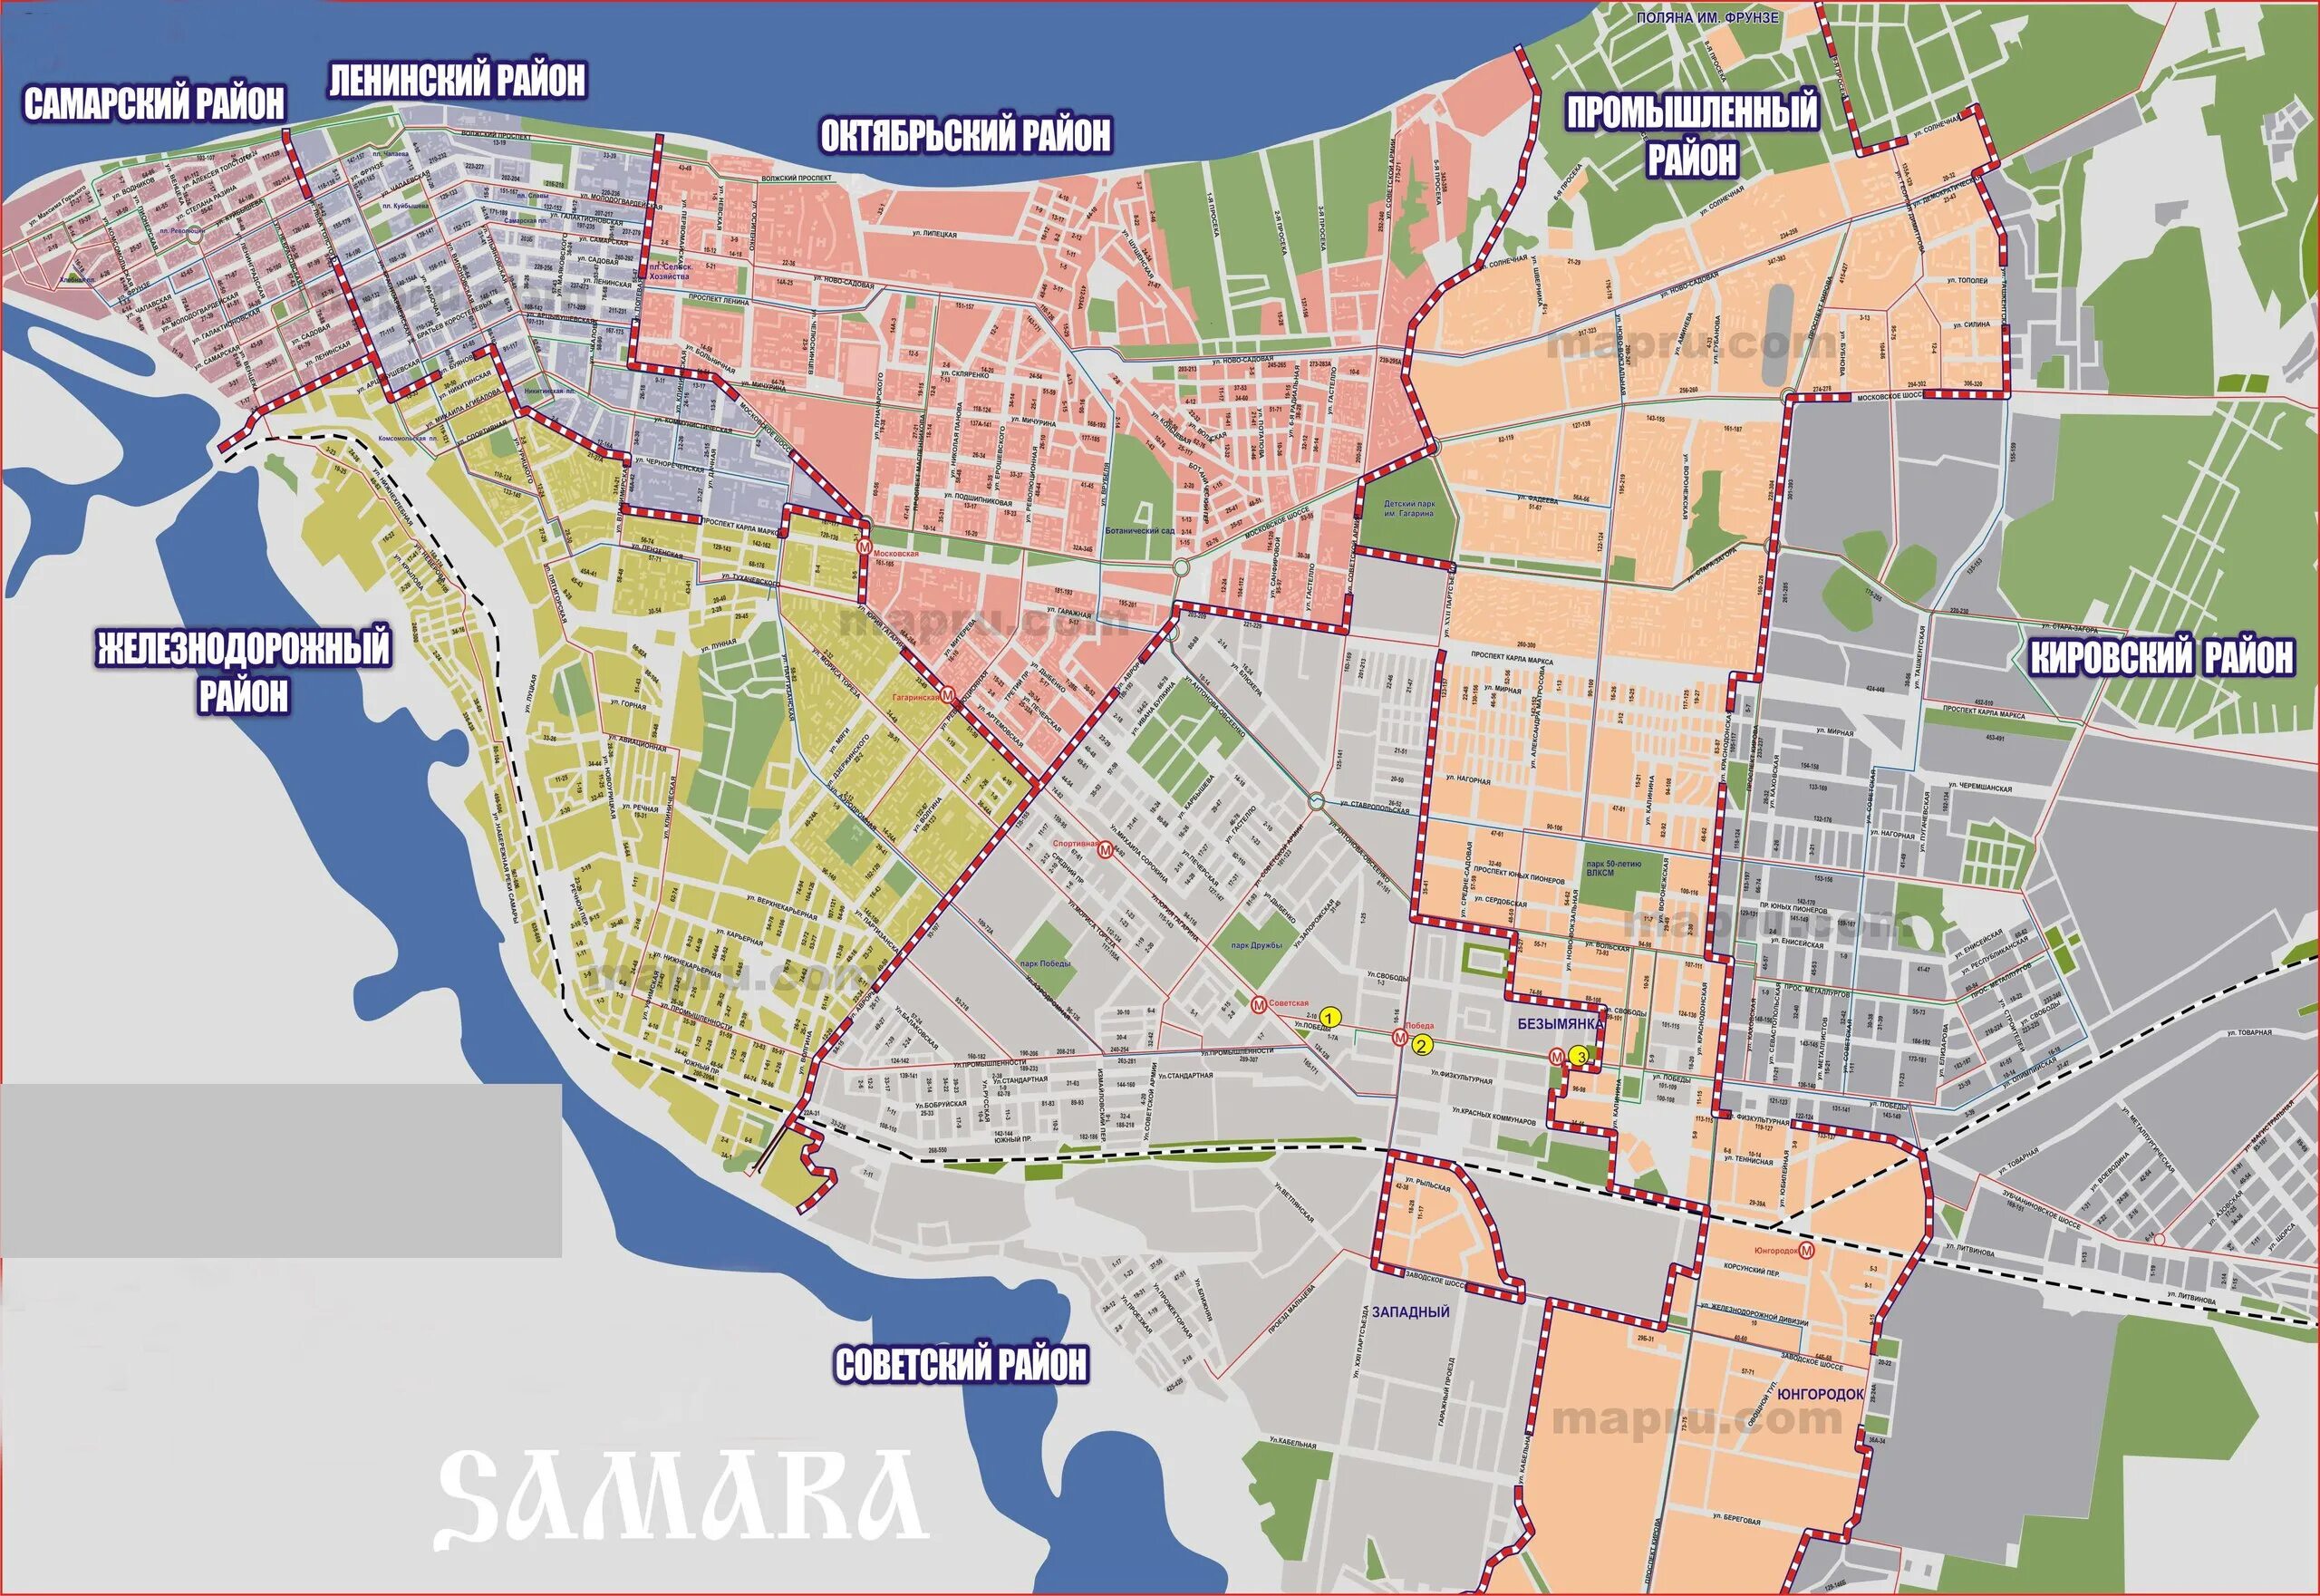 Покажи где самара. Карта Самары по районам города с улицами. Границы районов Самары. Карта Самары с районами города. Самара деление по районам карта.